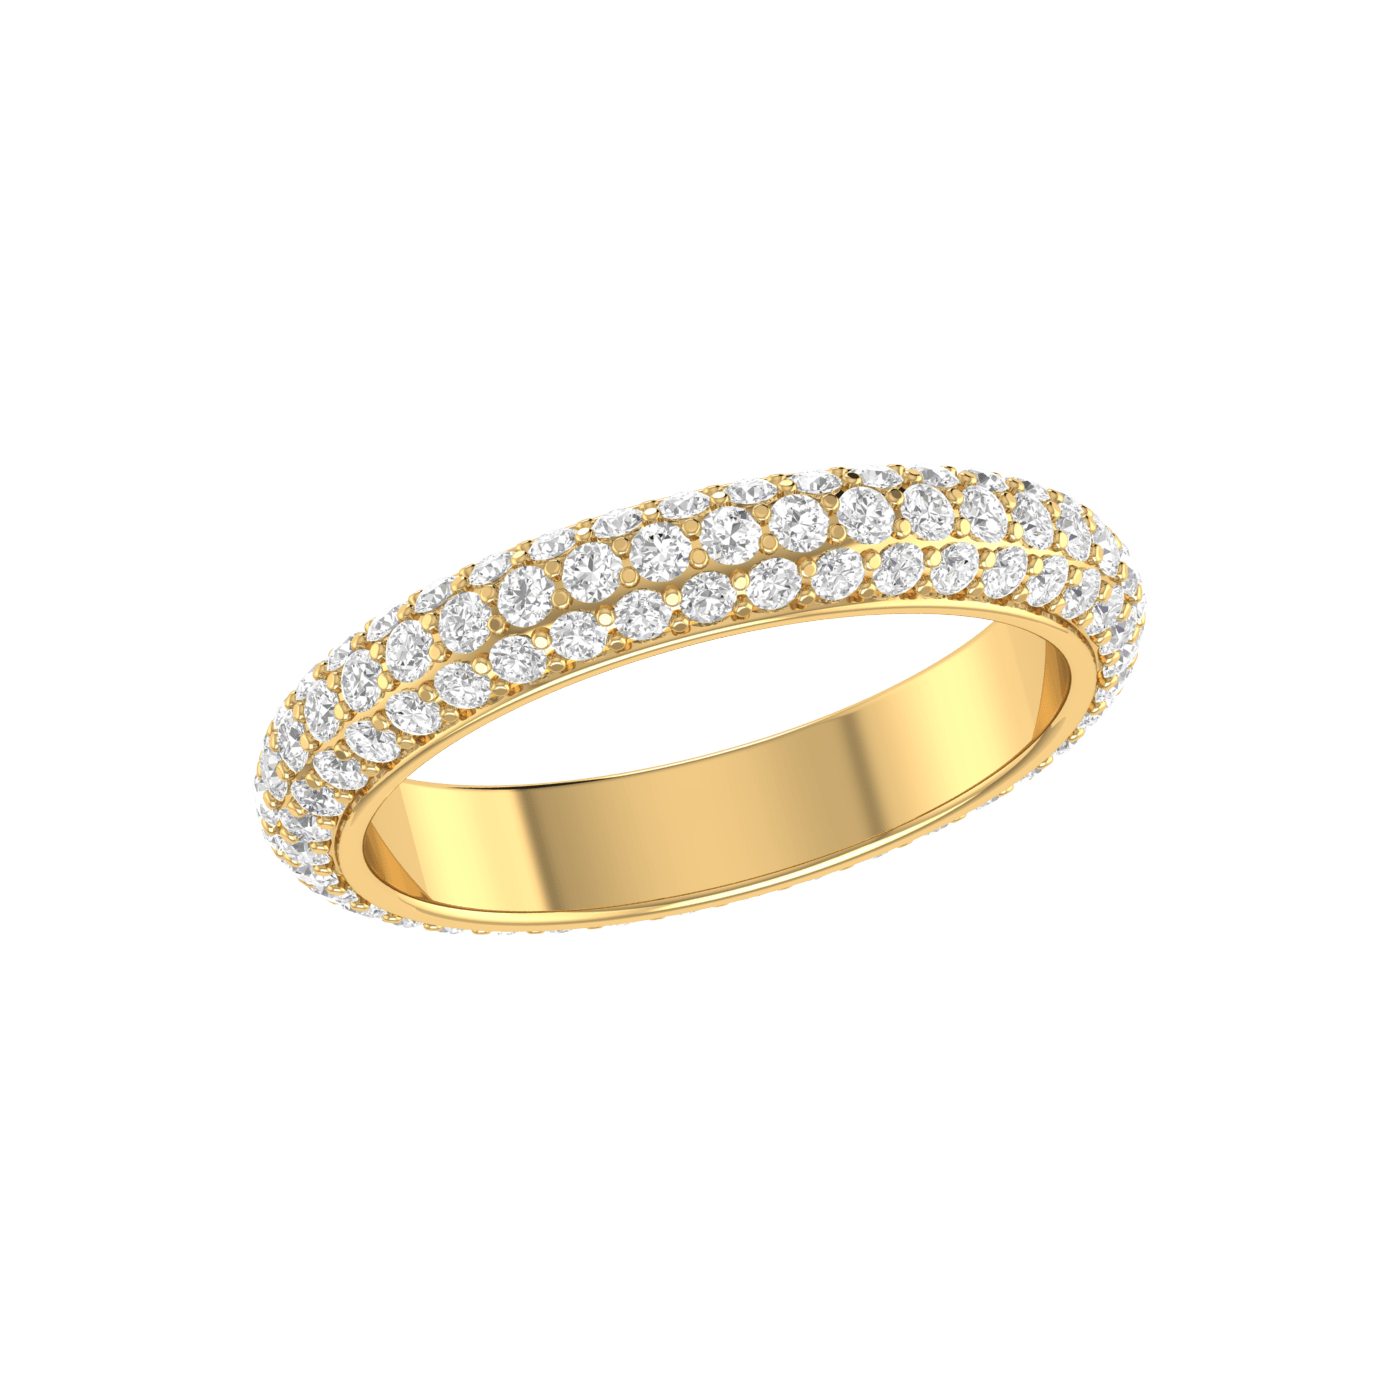 Men's Diamond Wedding Ring 2 Carat in 18K Gold Size 12